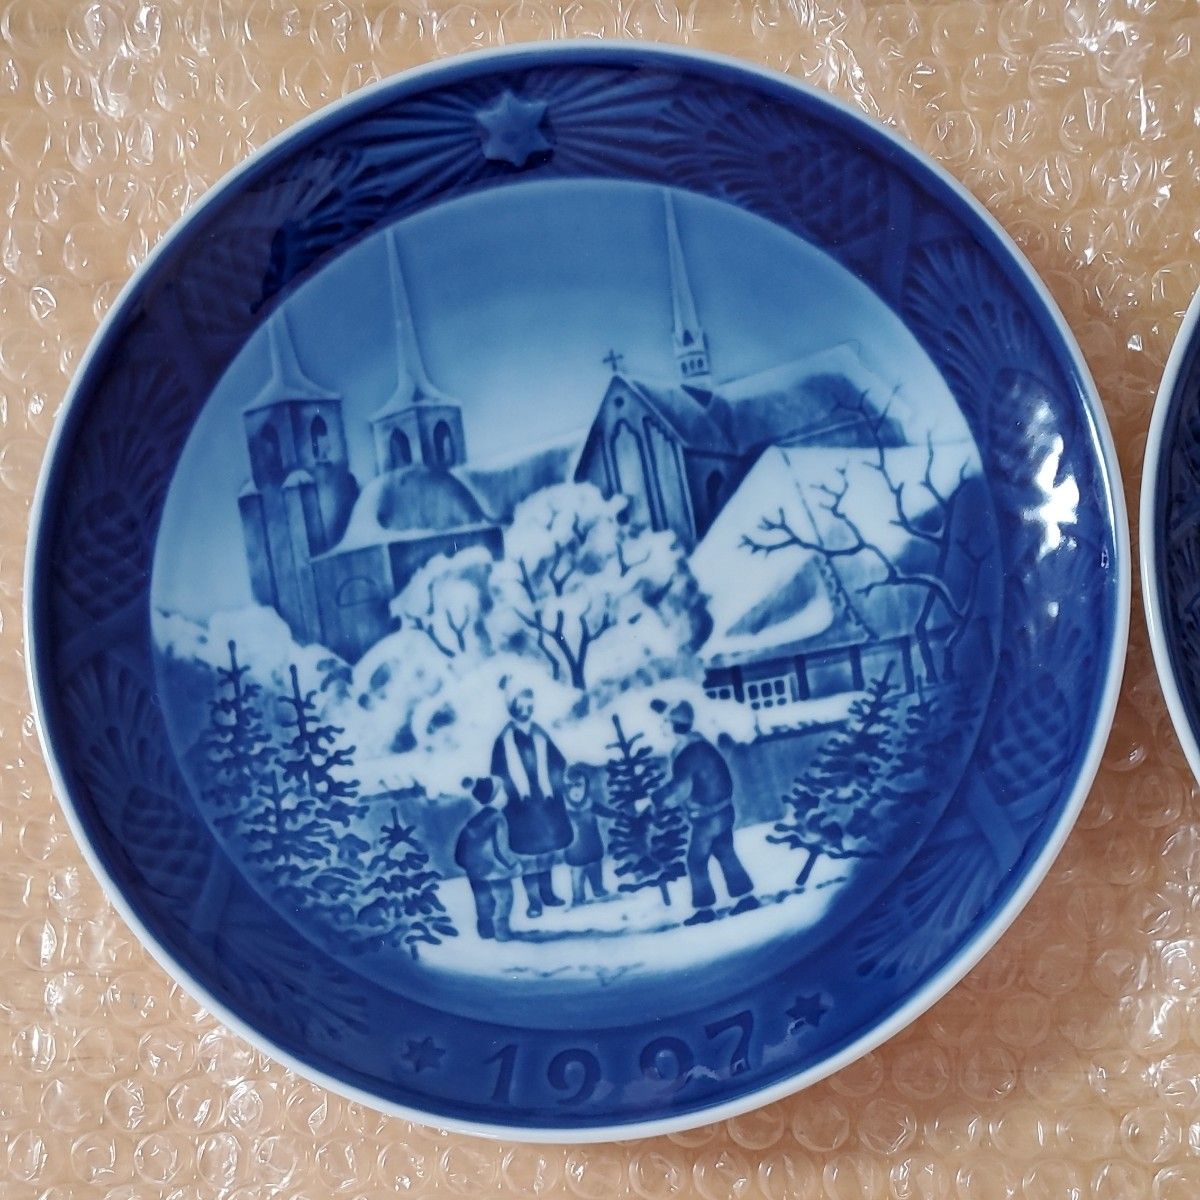 ロイヤルコペンハーゲン イヤープレート 飾皿 1997 1971